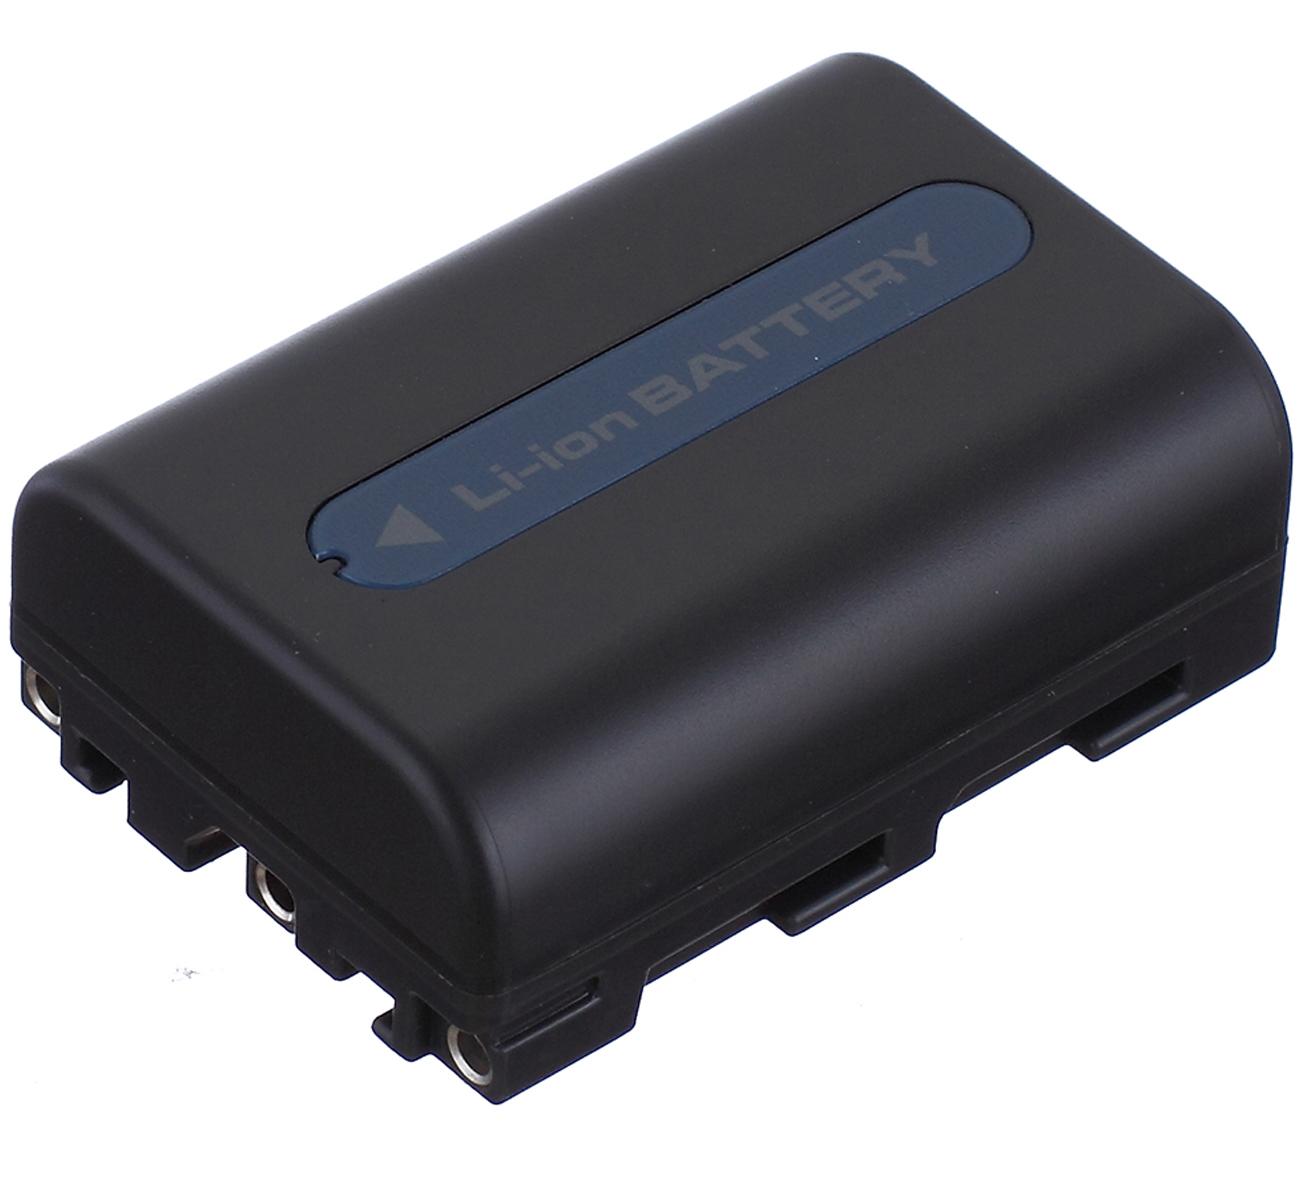 Изображение товара: Батарейный блок для видеокамеры sony DCR-TRV350E, DCR-TRV351E, DCR-TRV355E, DCR-TRV356E, DCR-TRV361E, DCR-TRV380E Handycam